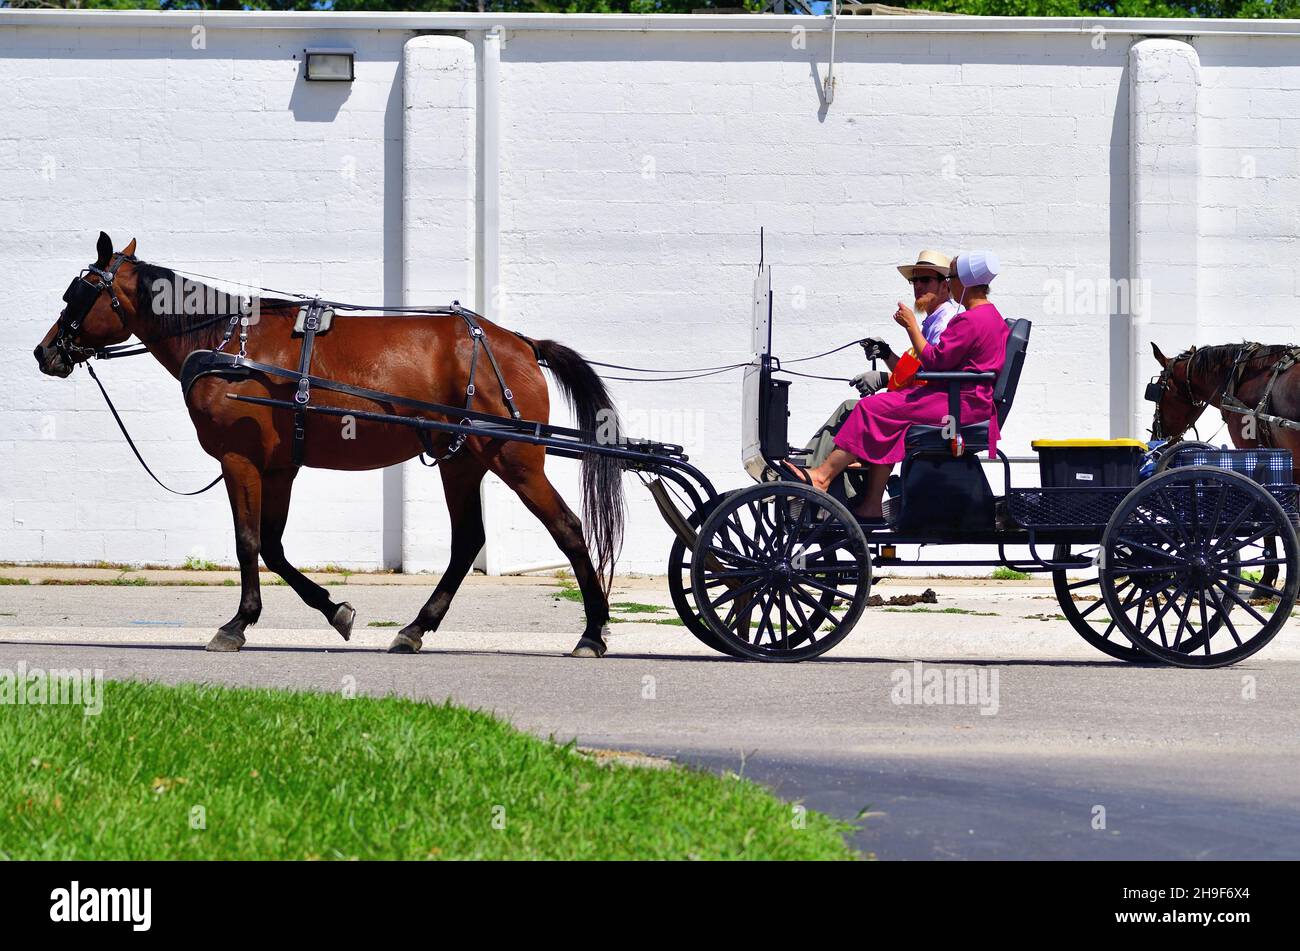 Lagrange, Indiana, États-Unis.Après avoir fait du shopping, un couple Amish rentre à la maison dans leur calèche ou en buggy dans une petite communauté du nord-est de l'Indiana. Banque D'Images